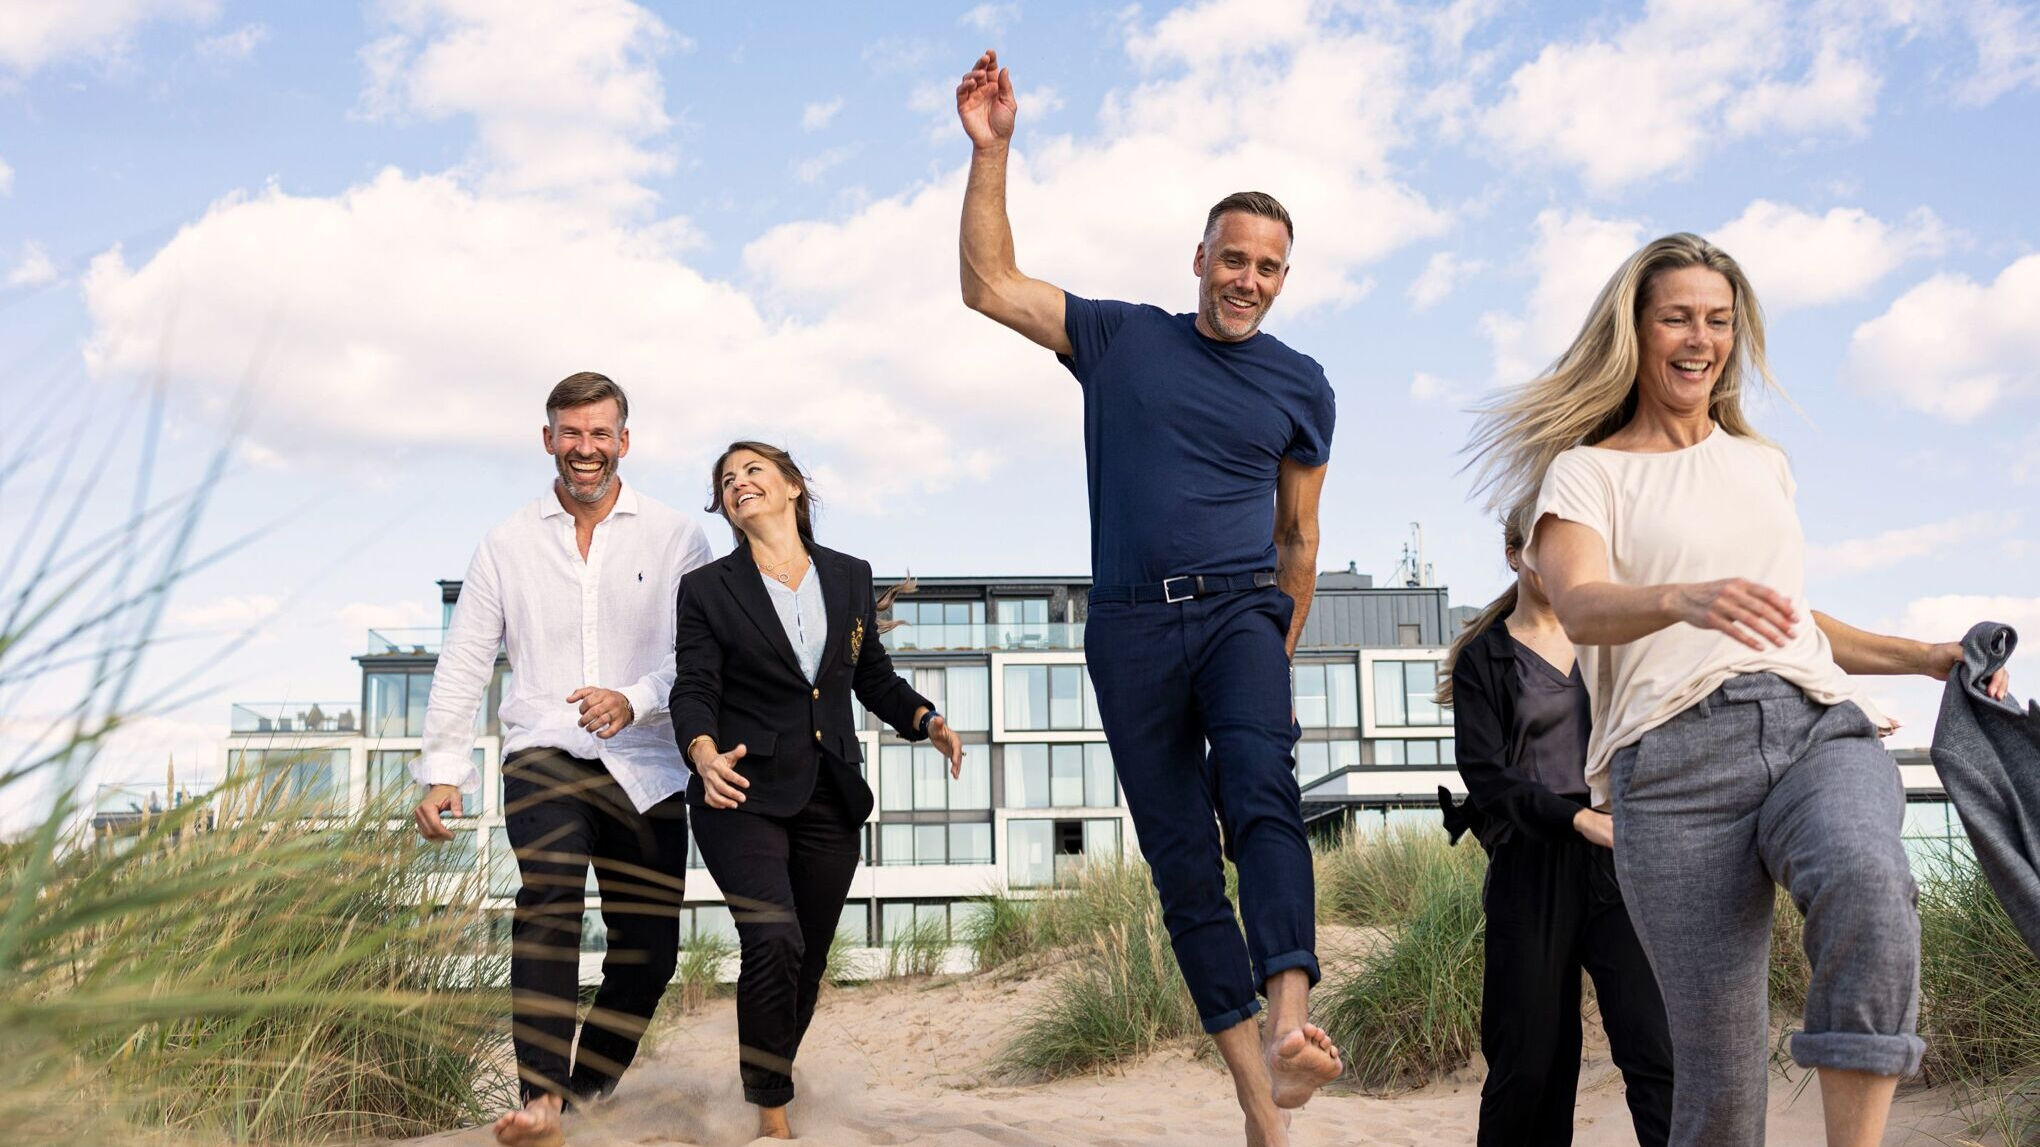 Fem glada personer springer i sanddyna med Hotel Tylösand i bakgrunden